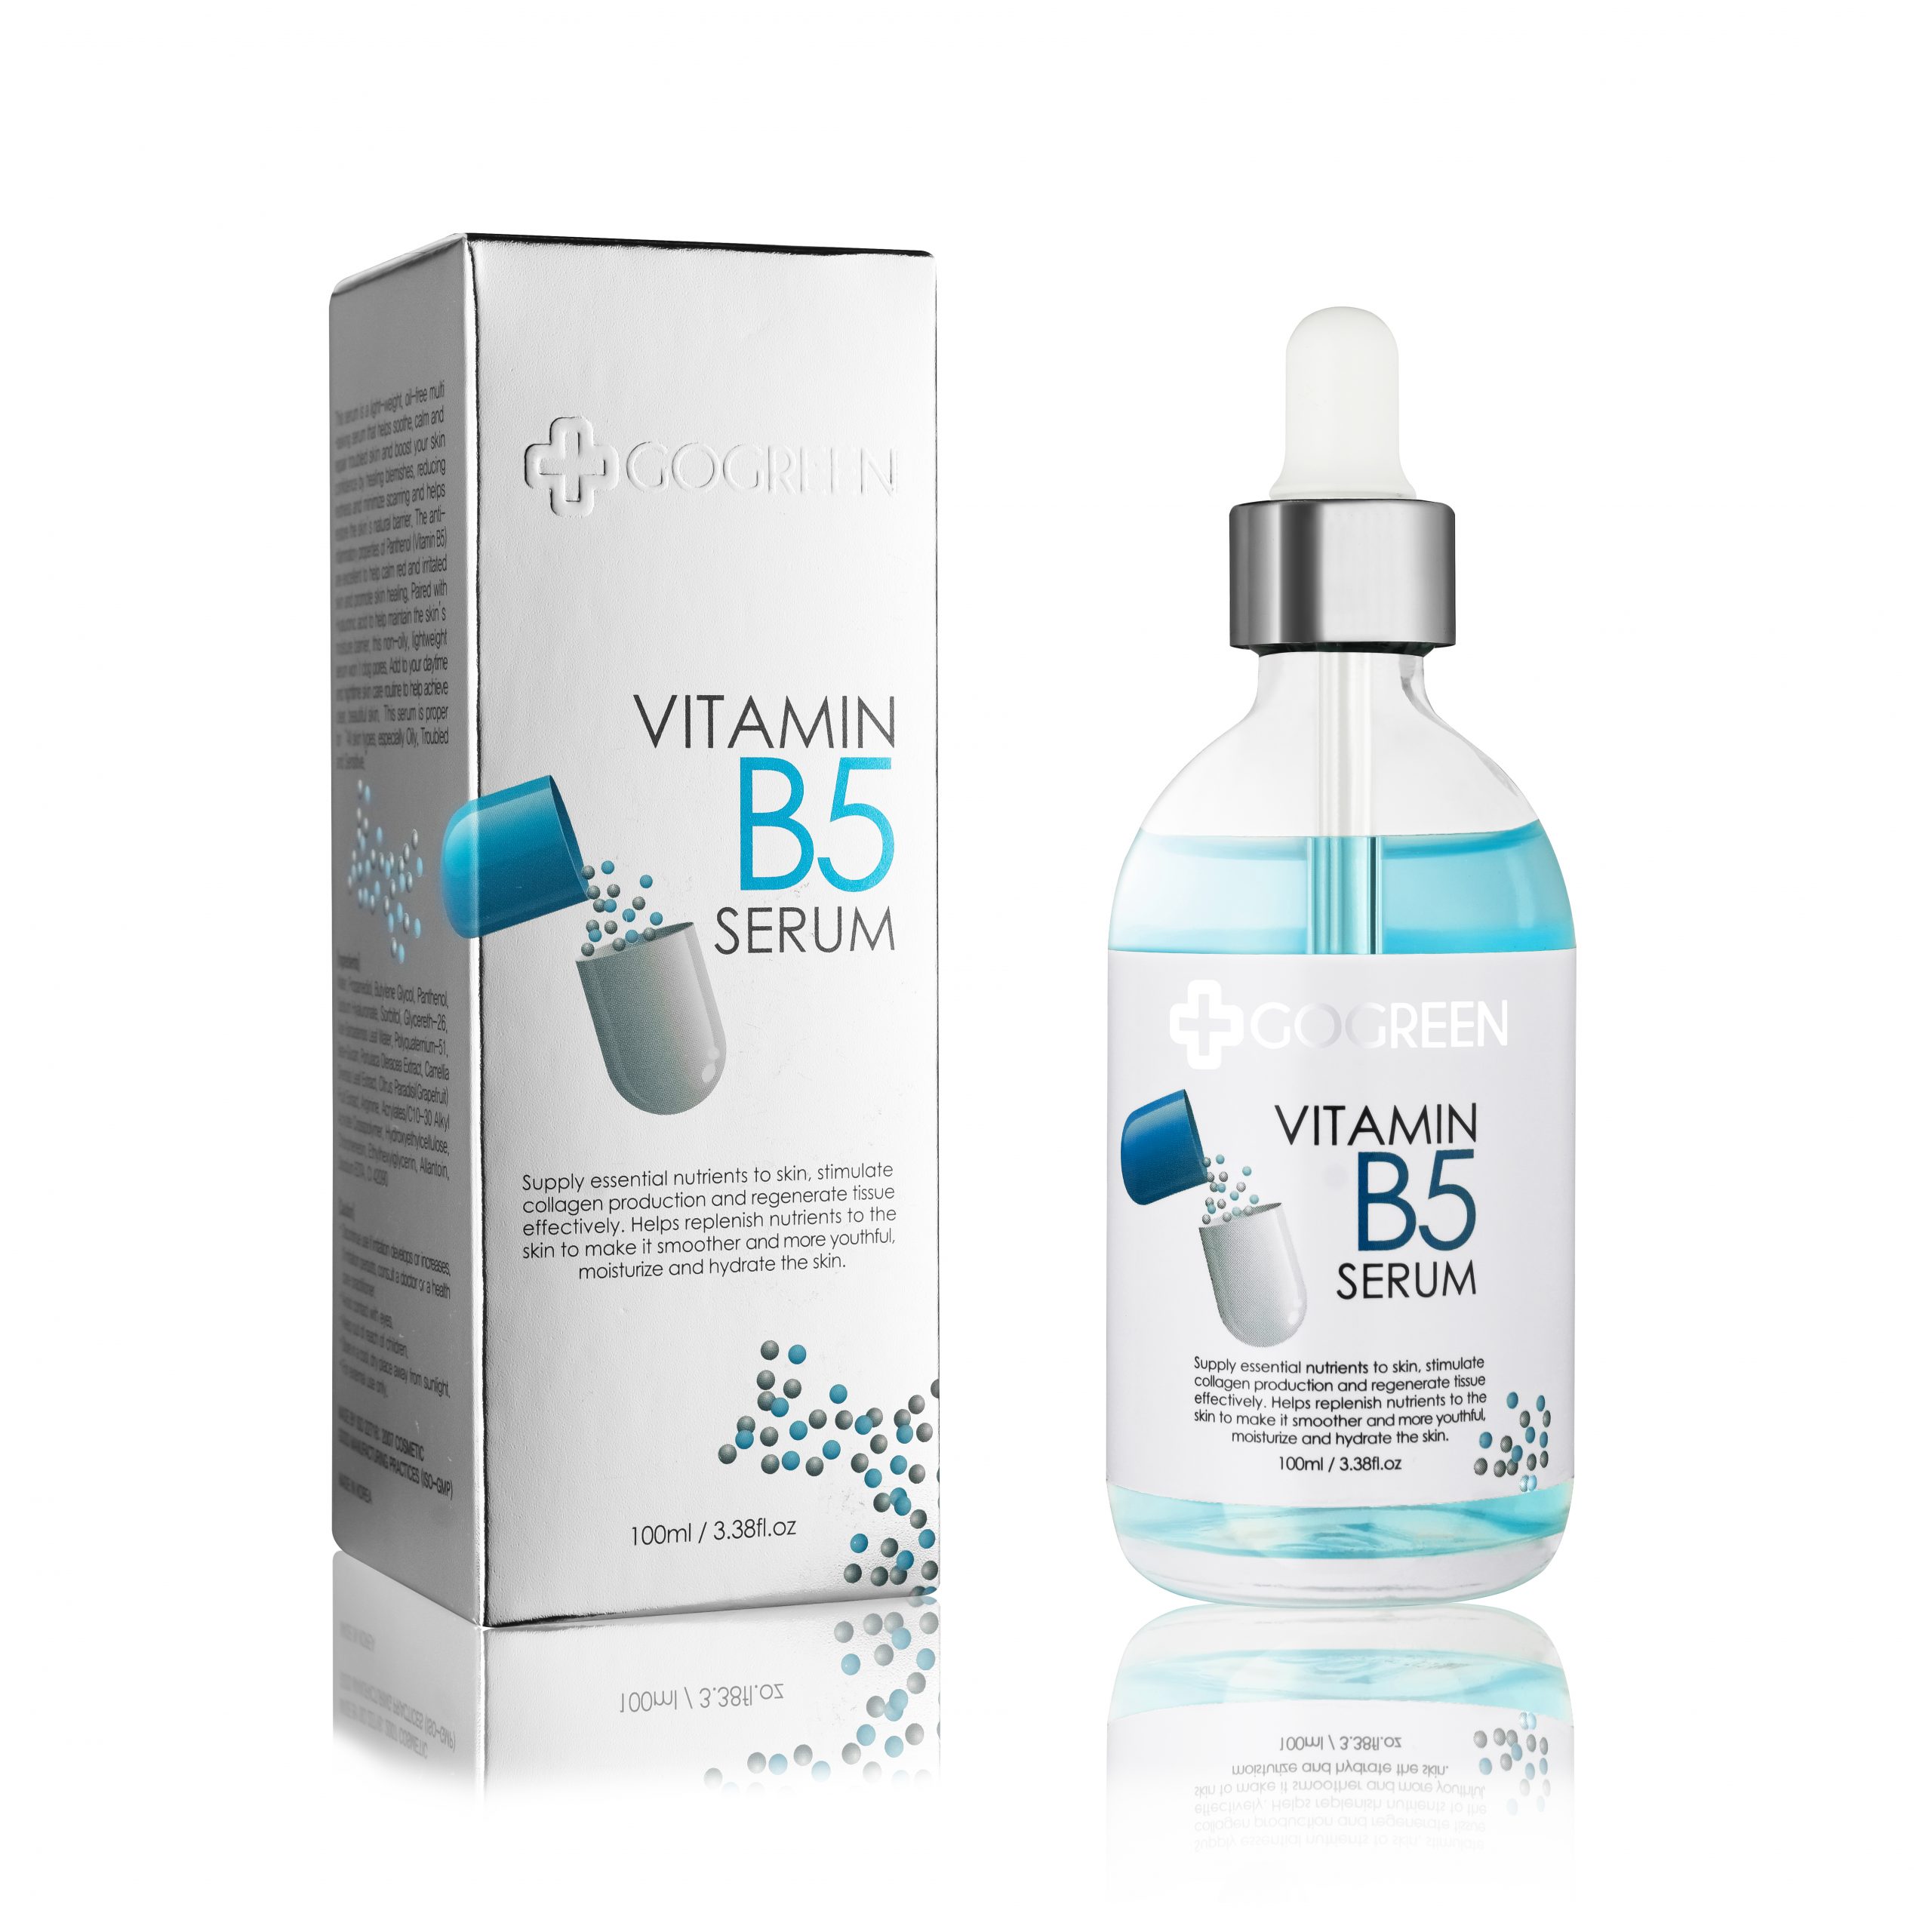 Có những loại da nào được khuyến cáo sử dụng serum Vitamin B5 Gogreen?
